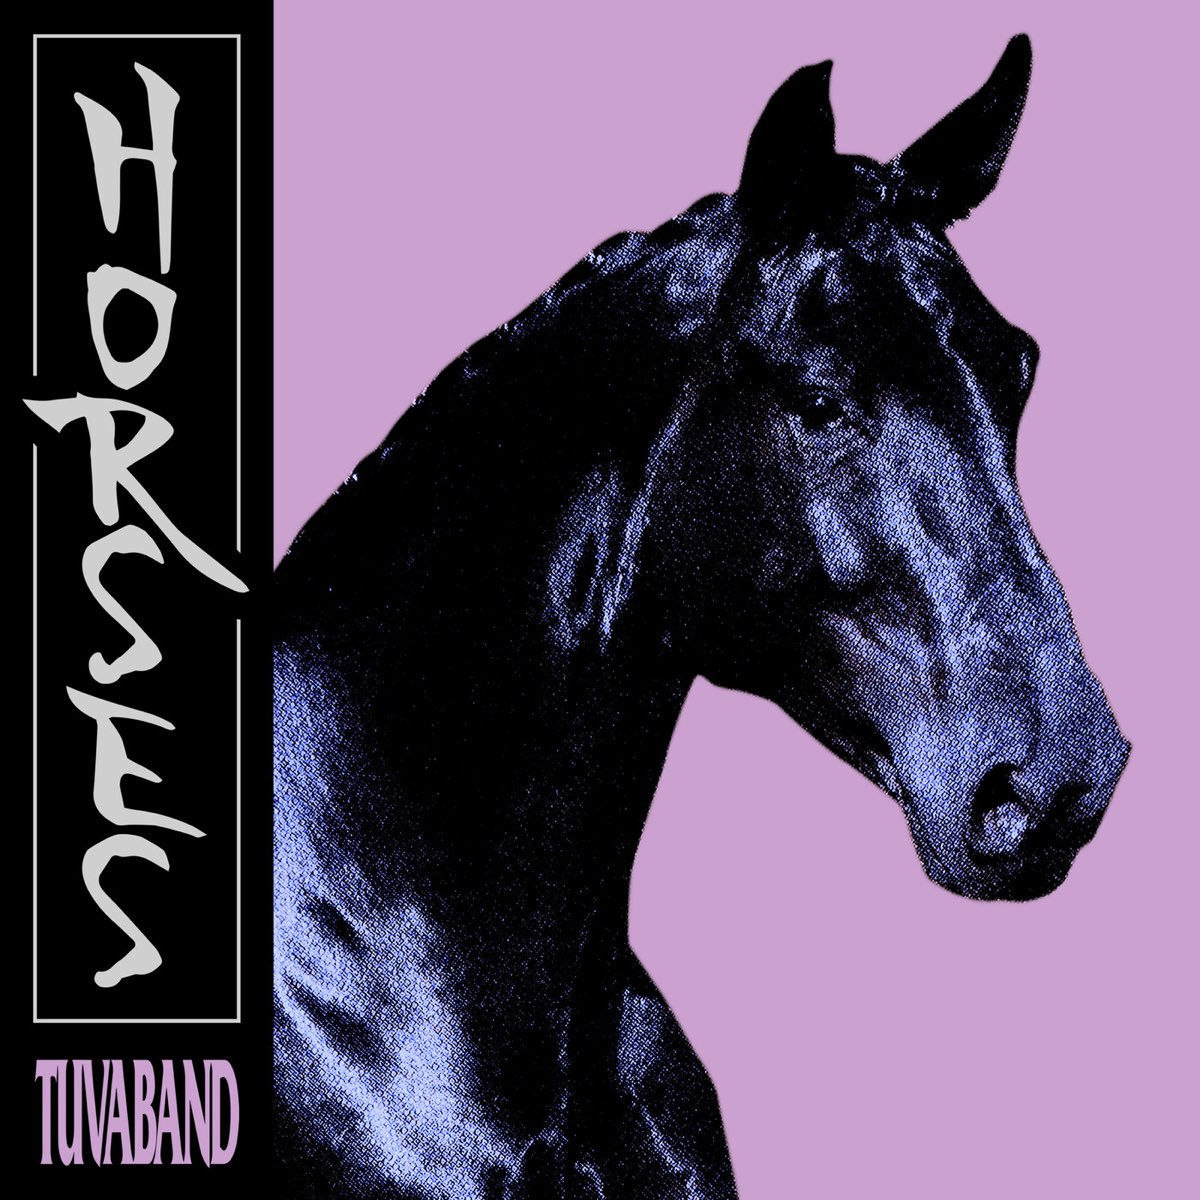 Альбом лошадки. Tuvaband. Horse музыкальный альбом. Хорс исполнитель. "Tuvaband" "i entered the Void".